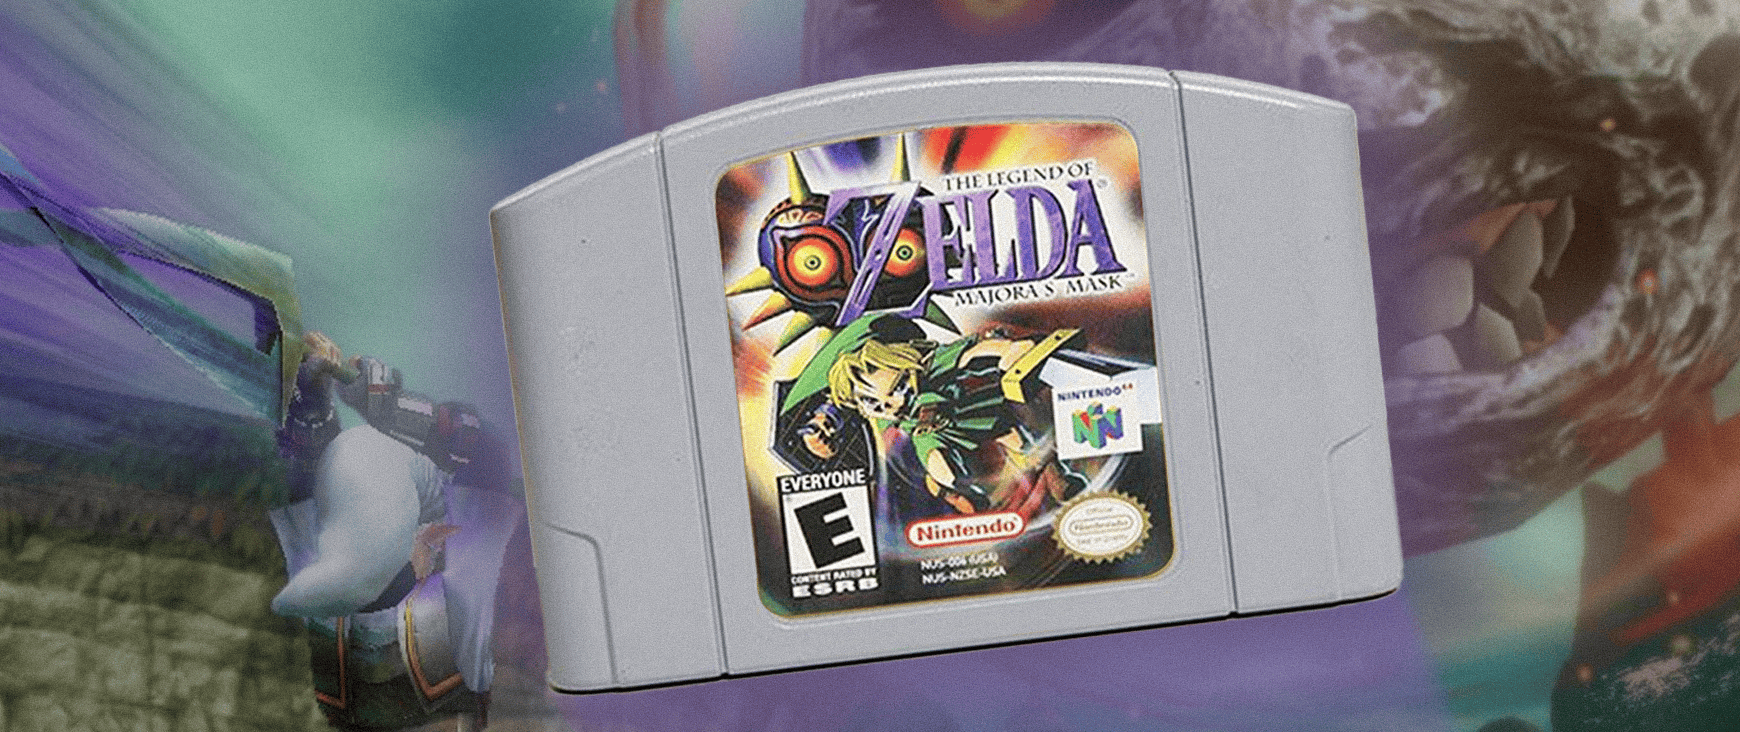 Legend of Zelda Majora's Mask on Nintendo 64